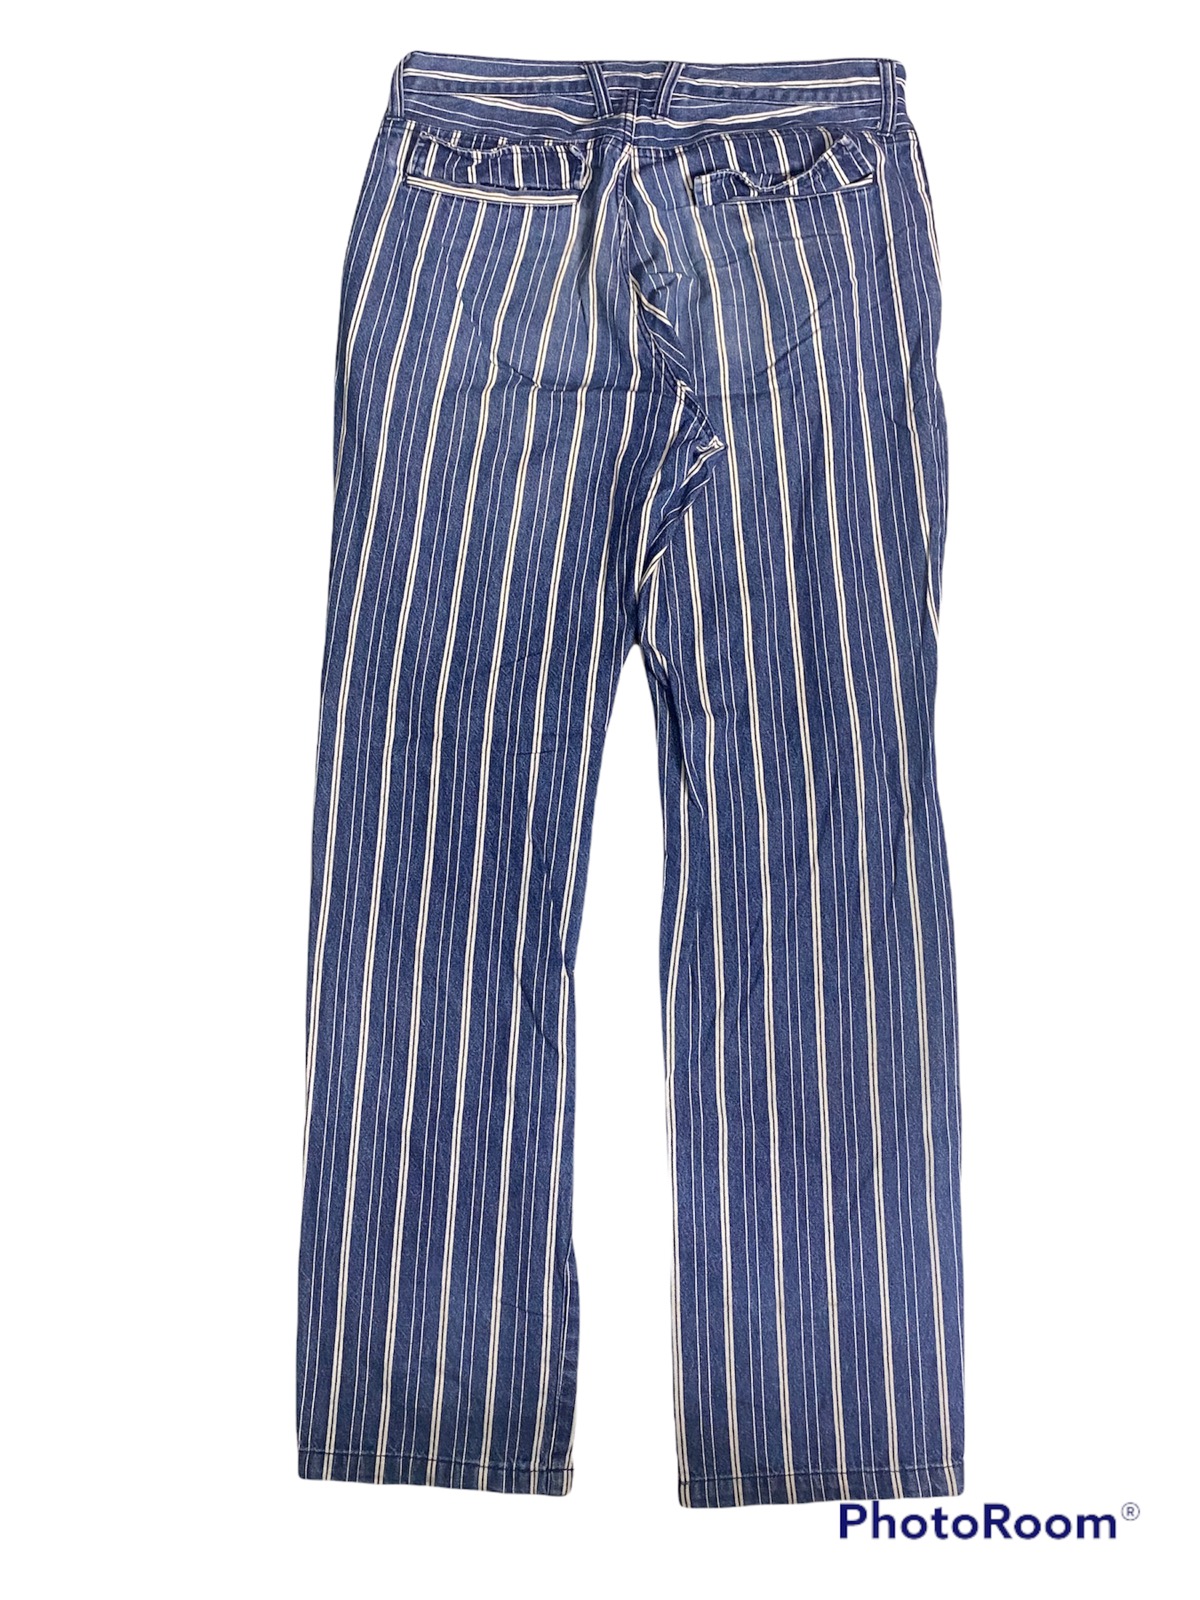 Japanese Brand - Japanese Brand PPFM Blue Stripe Denim Pants